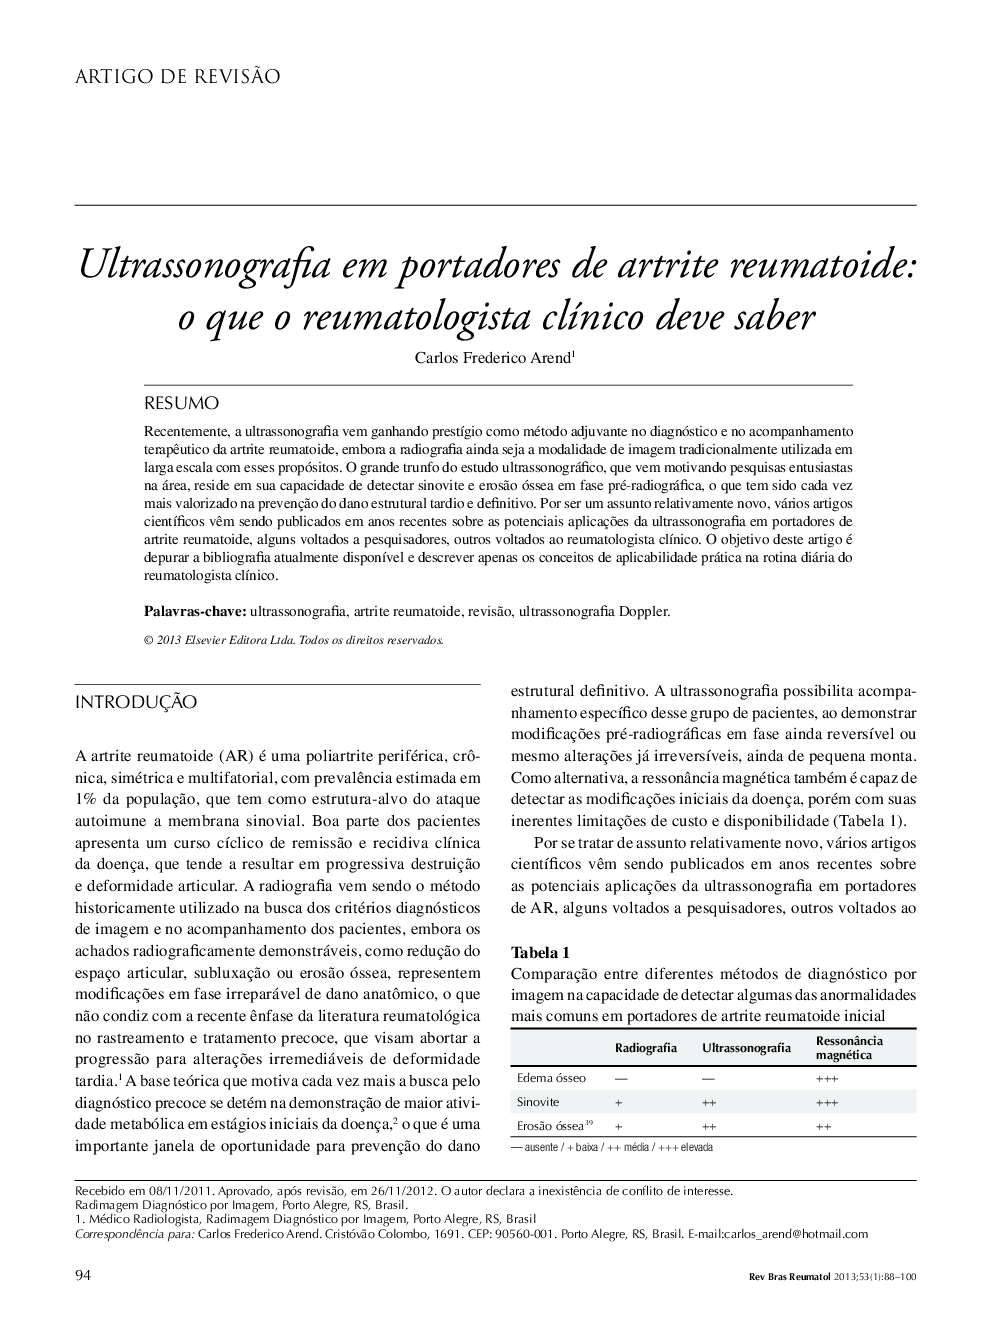 Ultrassonografia em portadores de artrite reumatoide: o que o reumatologista clínico deve saber